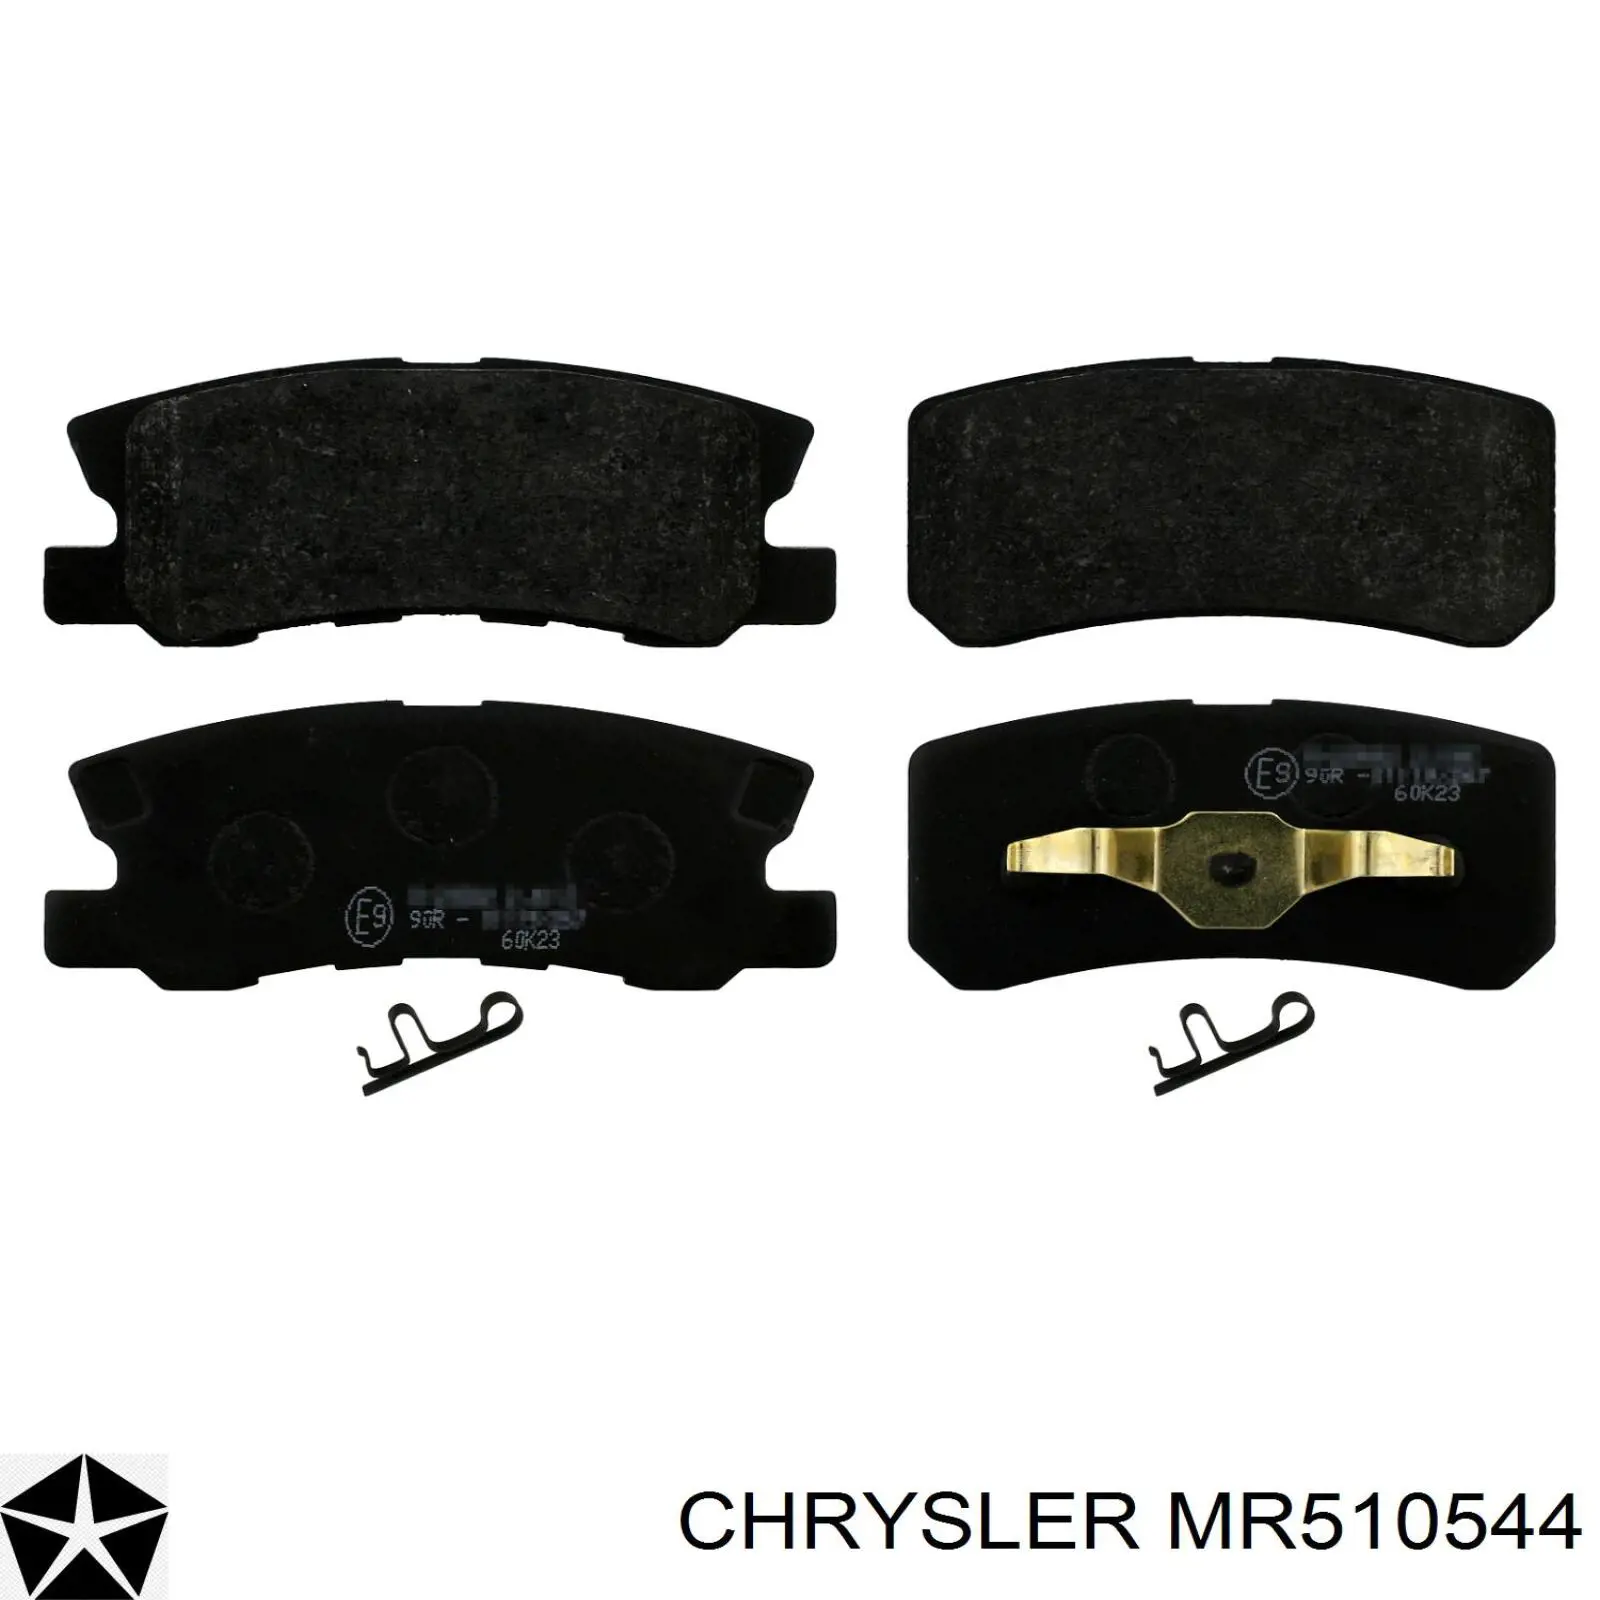 MR510544 Chrysler колодки тормозные задние дисковые